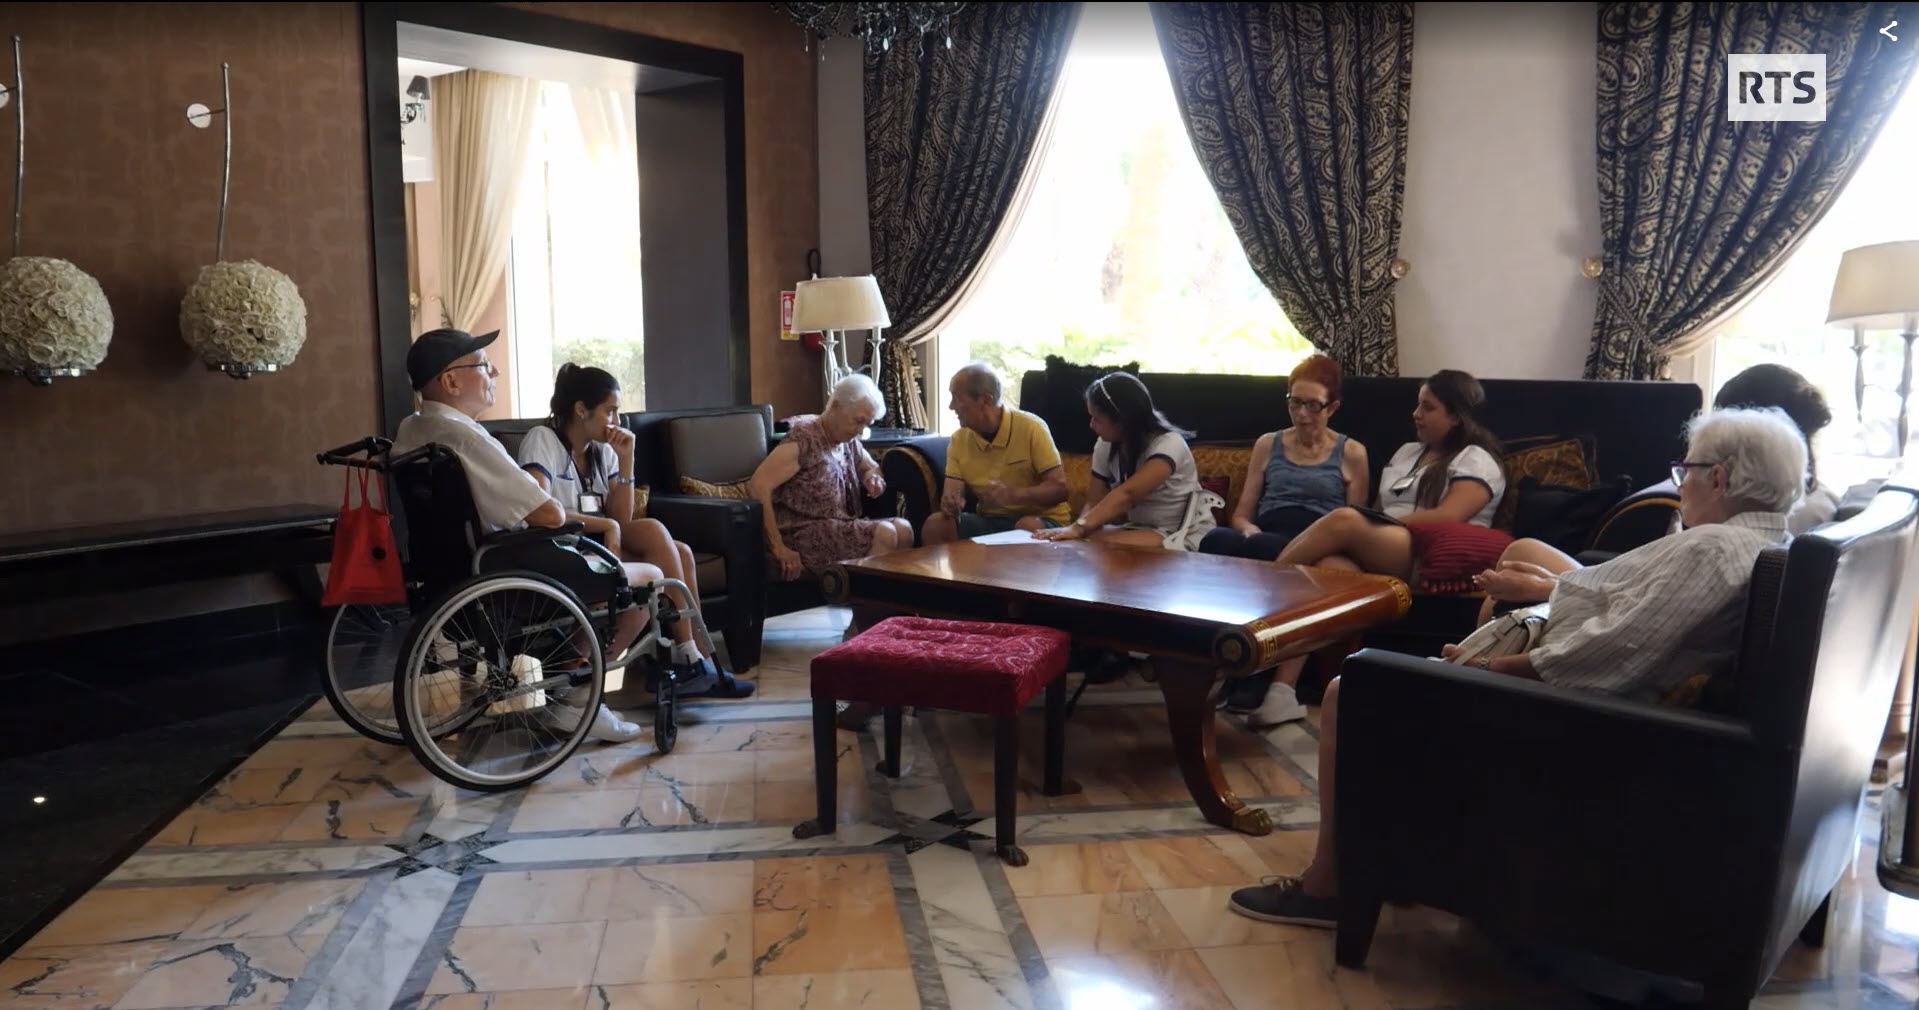 Des séniors dans un hôtel tunisien transformé en EMS